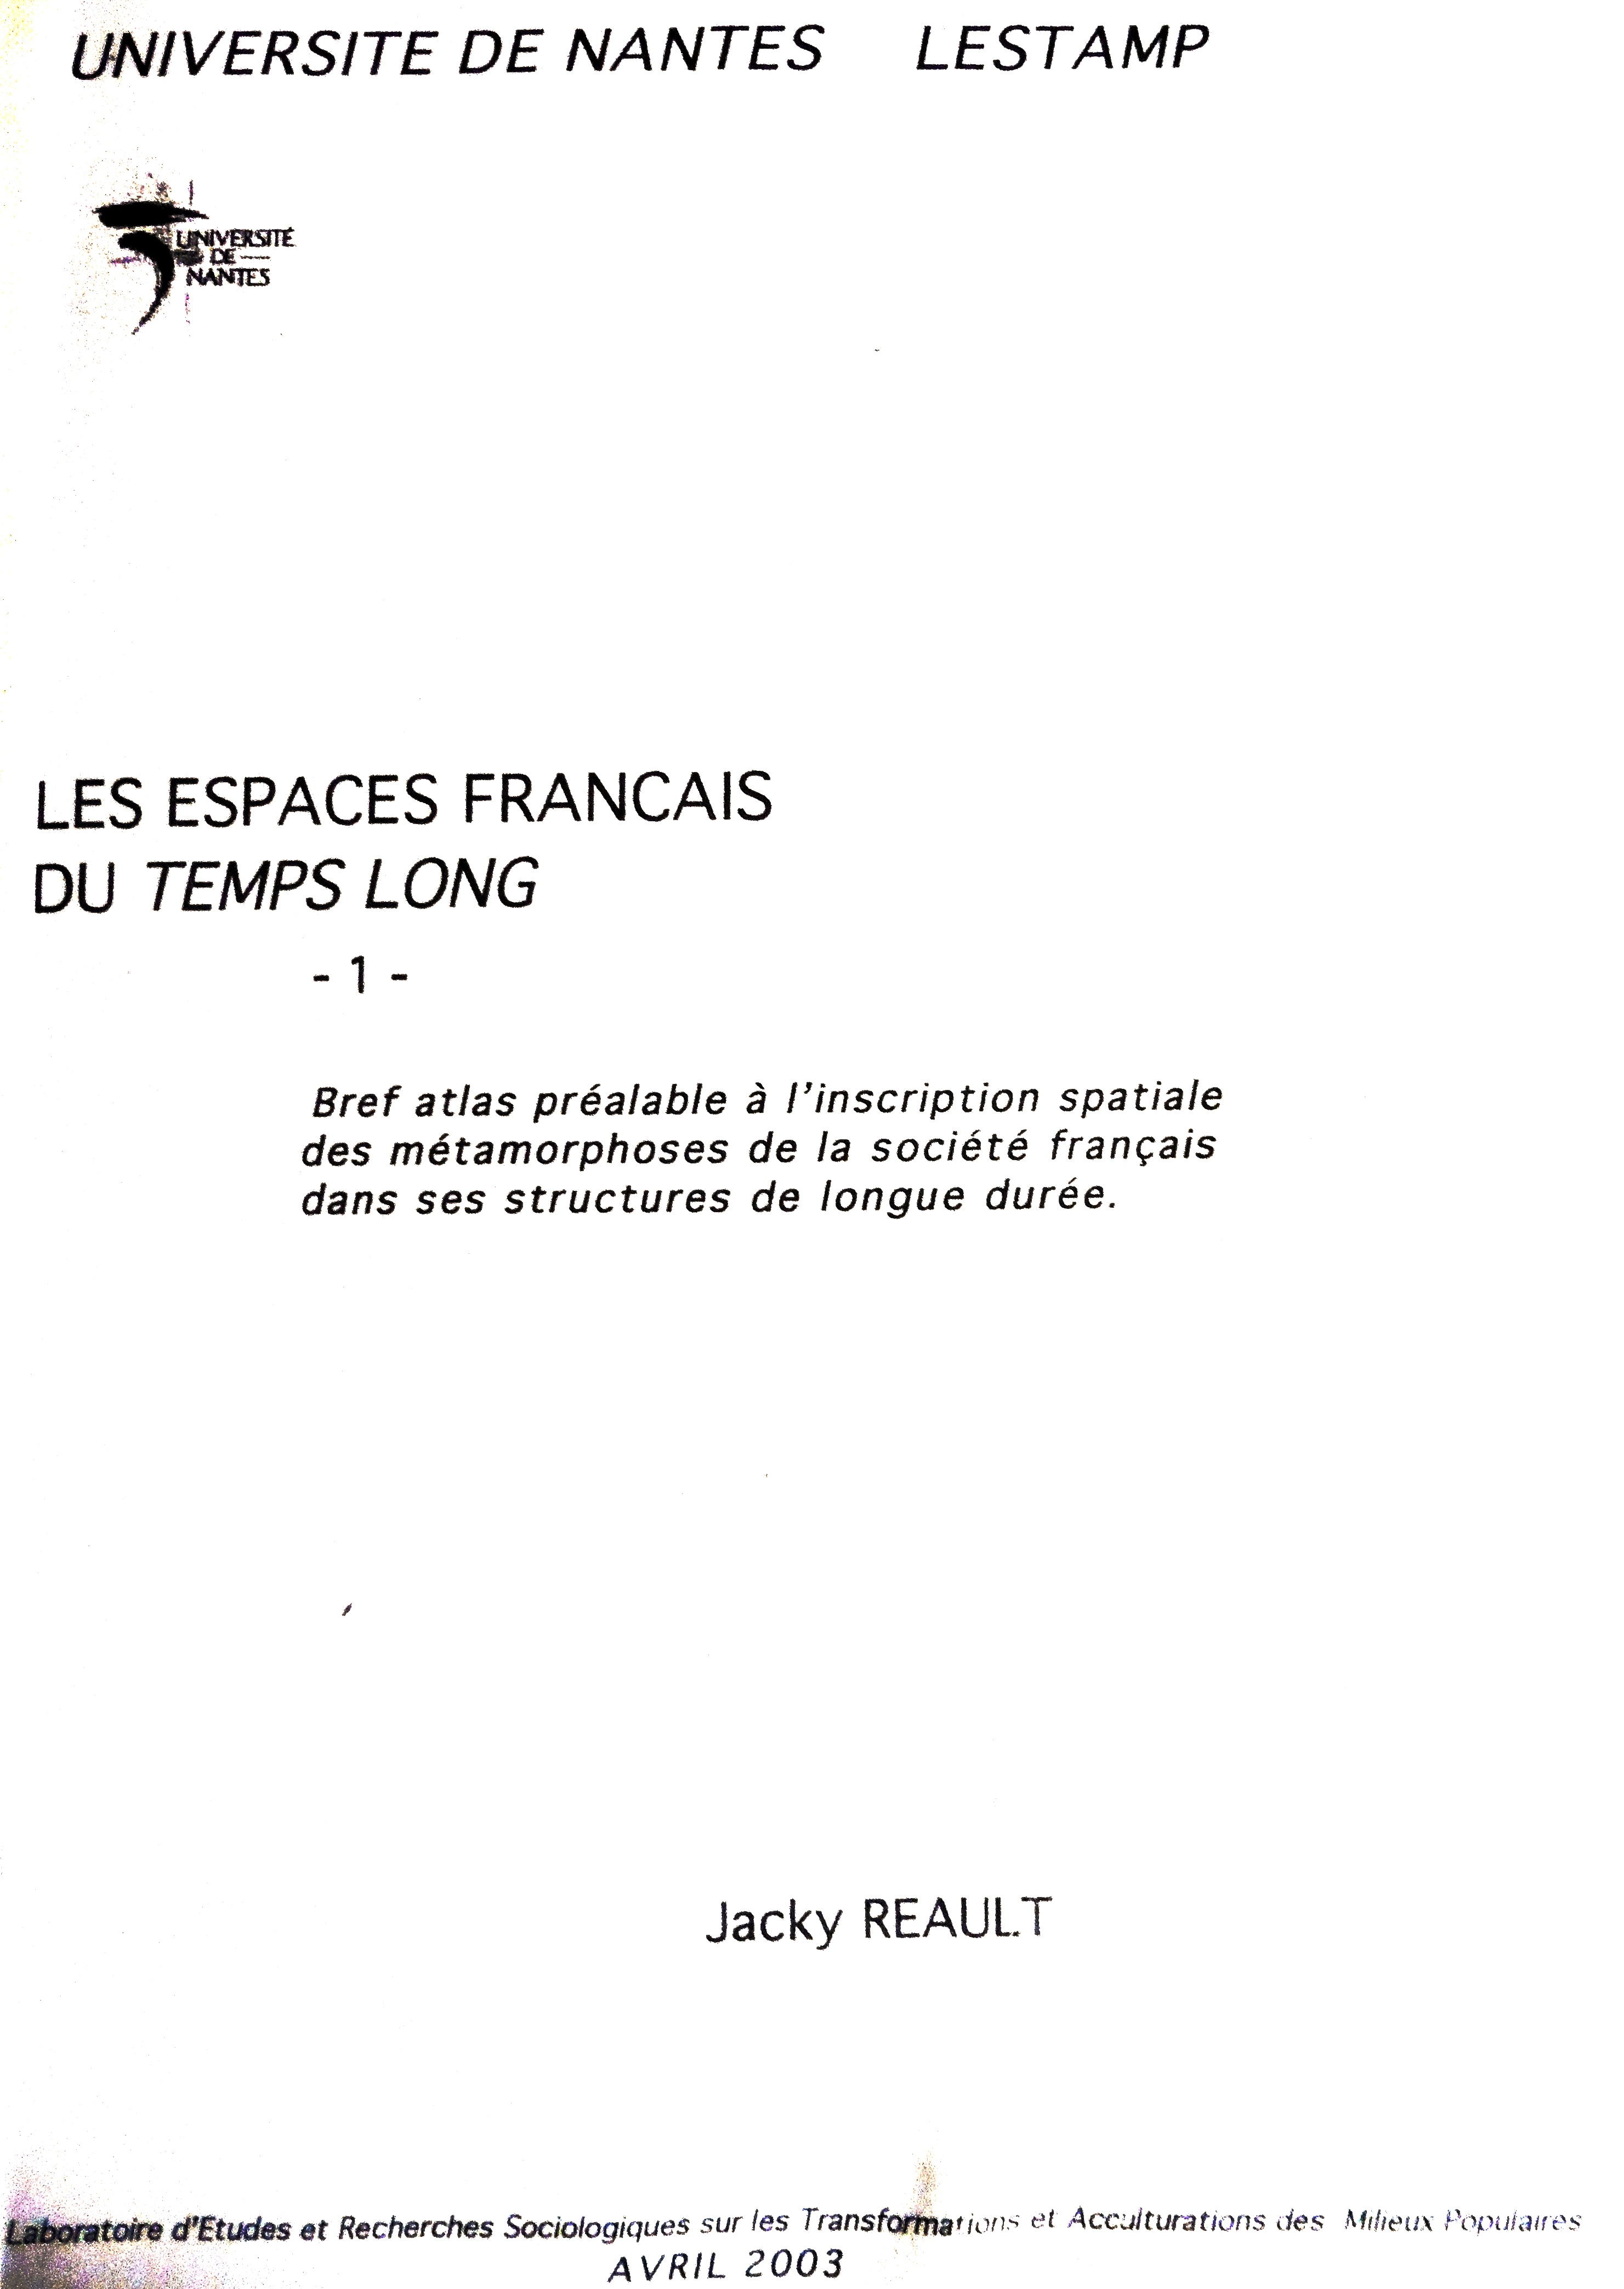 J Rault, Les espaces franais du temps long. Universit de Nantes Lestamp 2003.